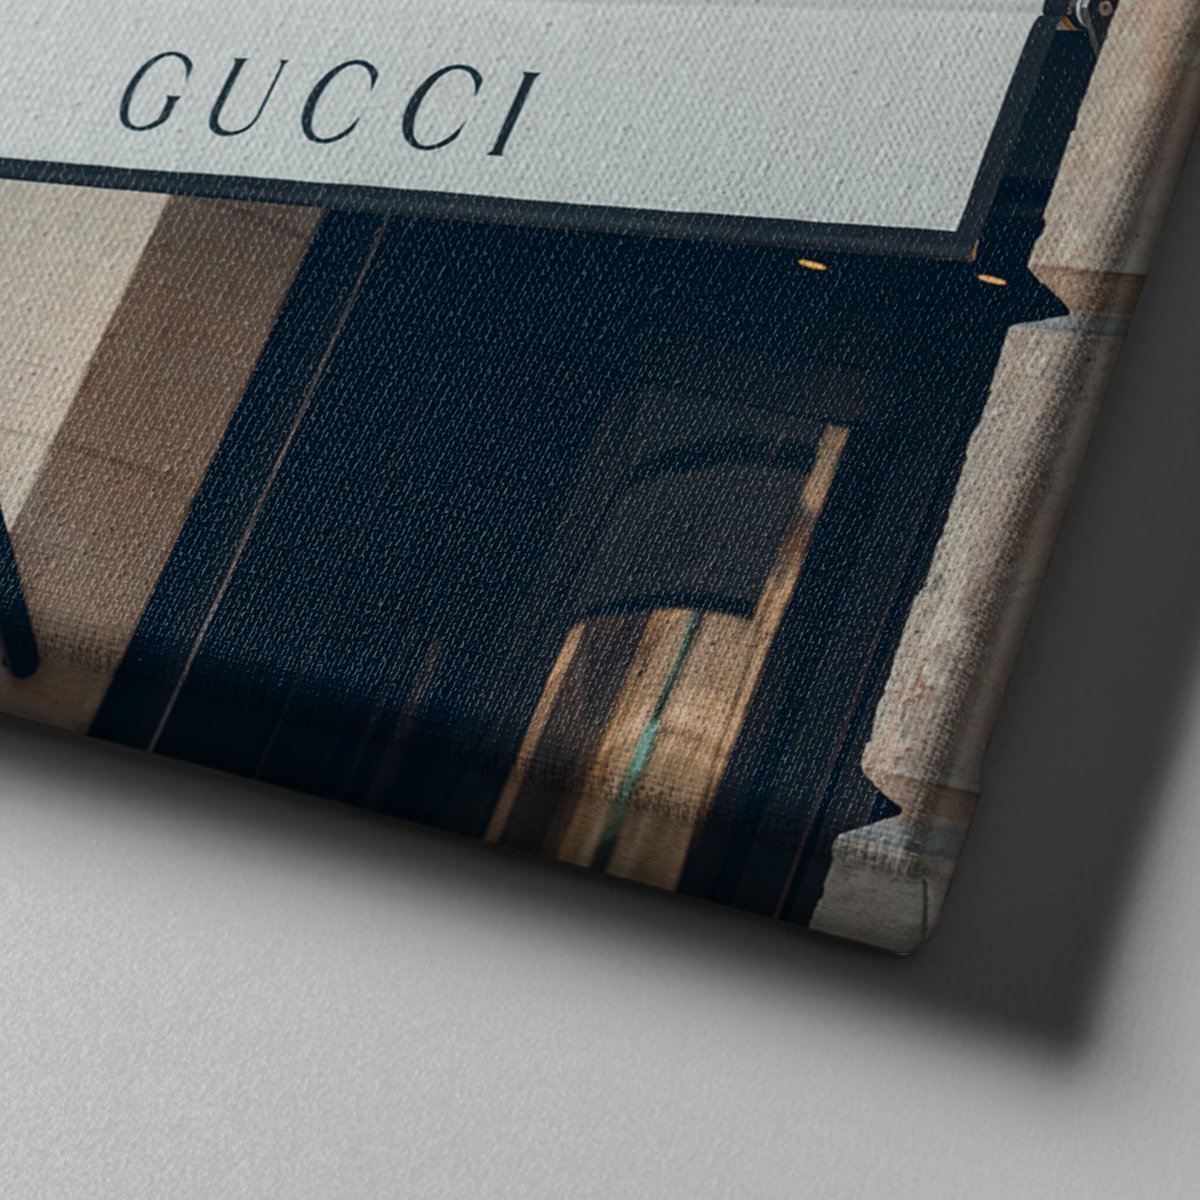 Canvas701 | Gucci Mağaza Önü Kanvas Tablo - 